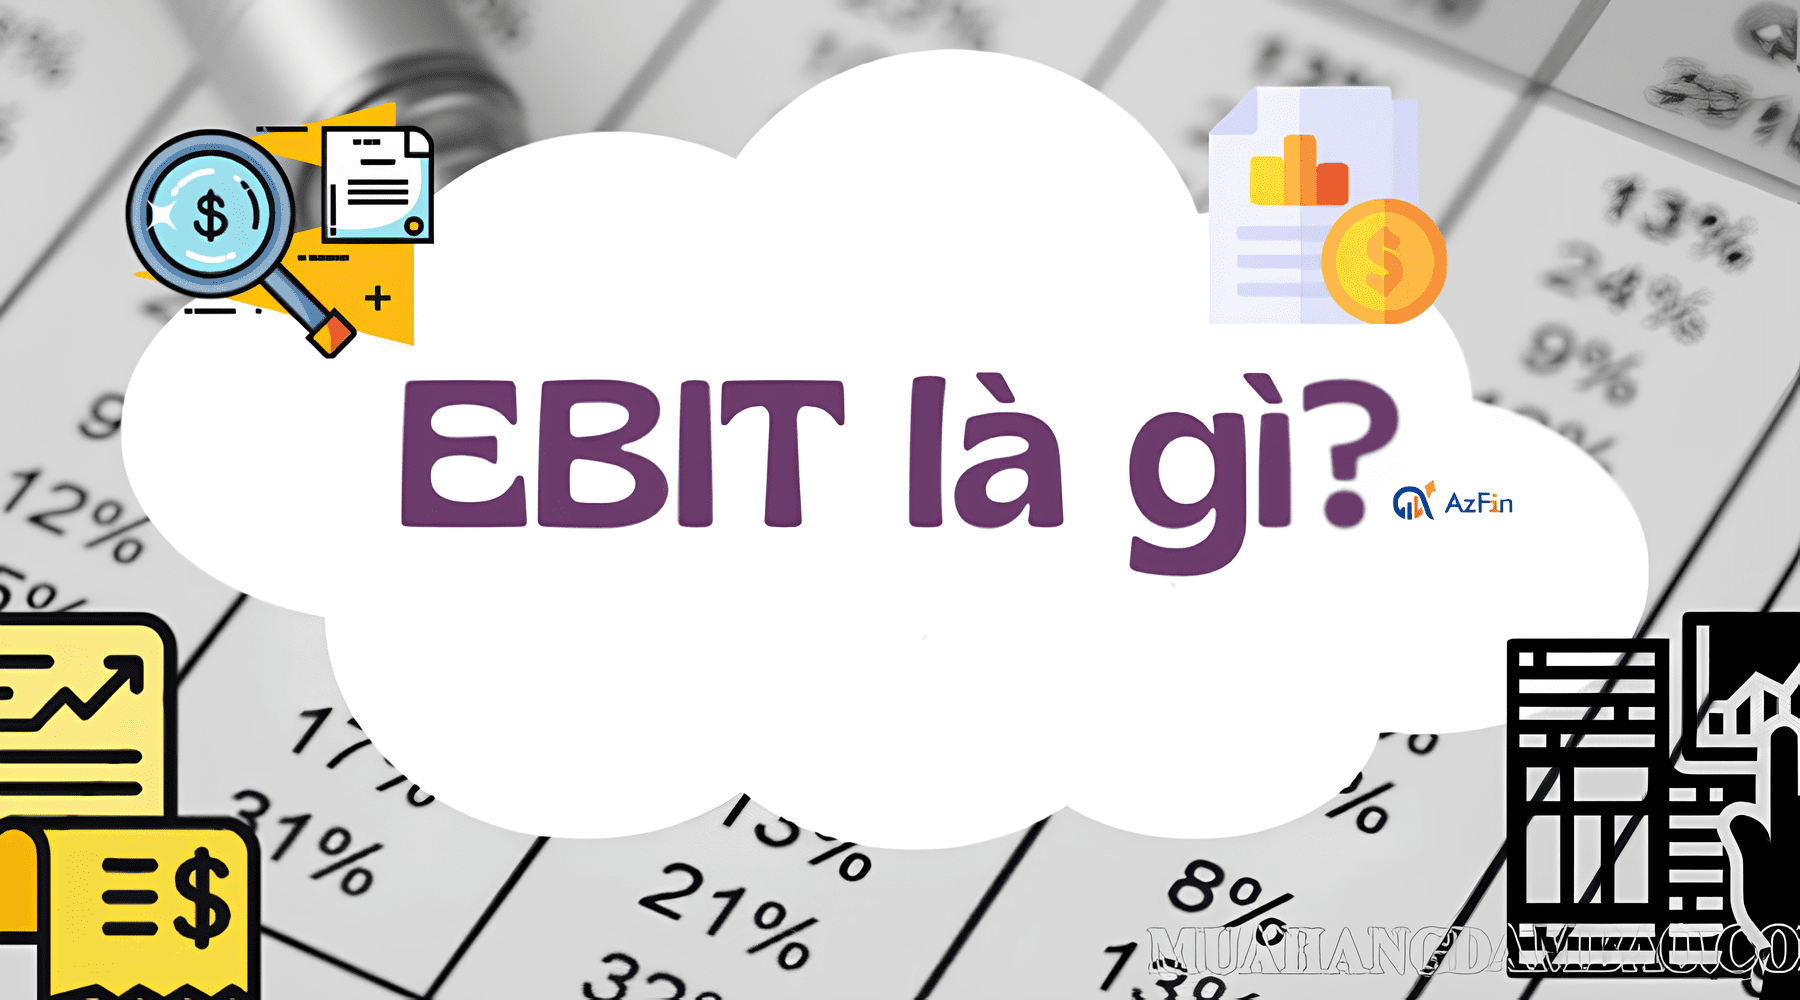 Chỉ số EBIT là gì? Công thức tính chỉ số EBIT